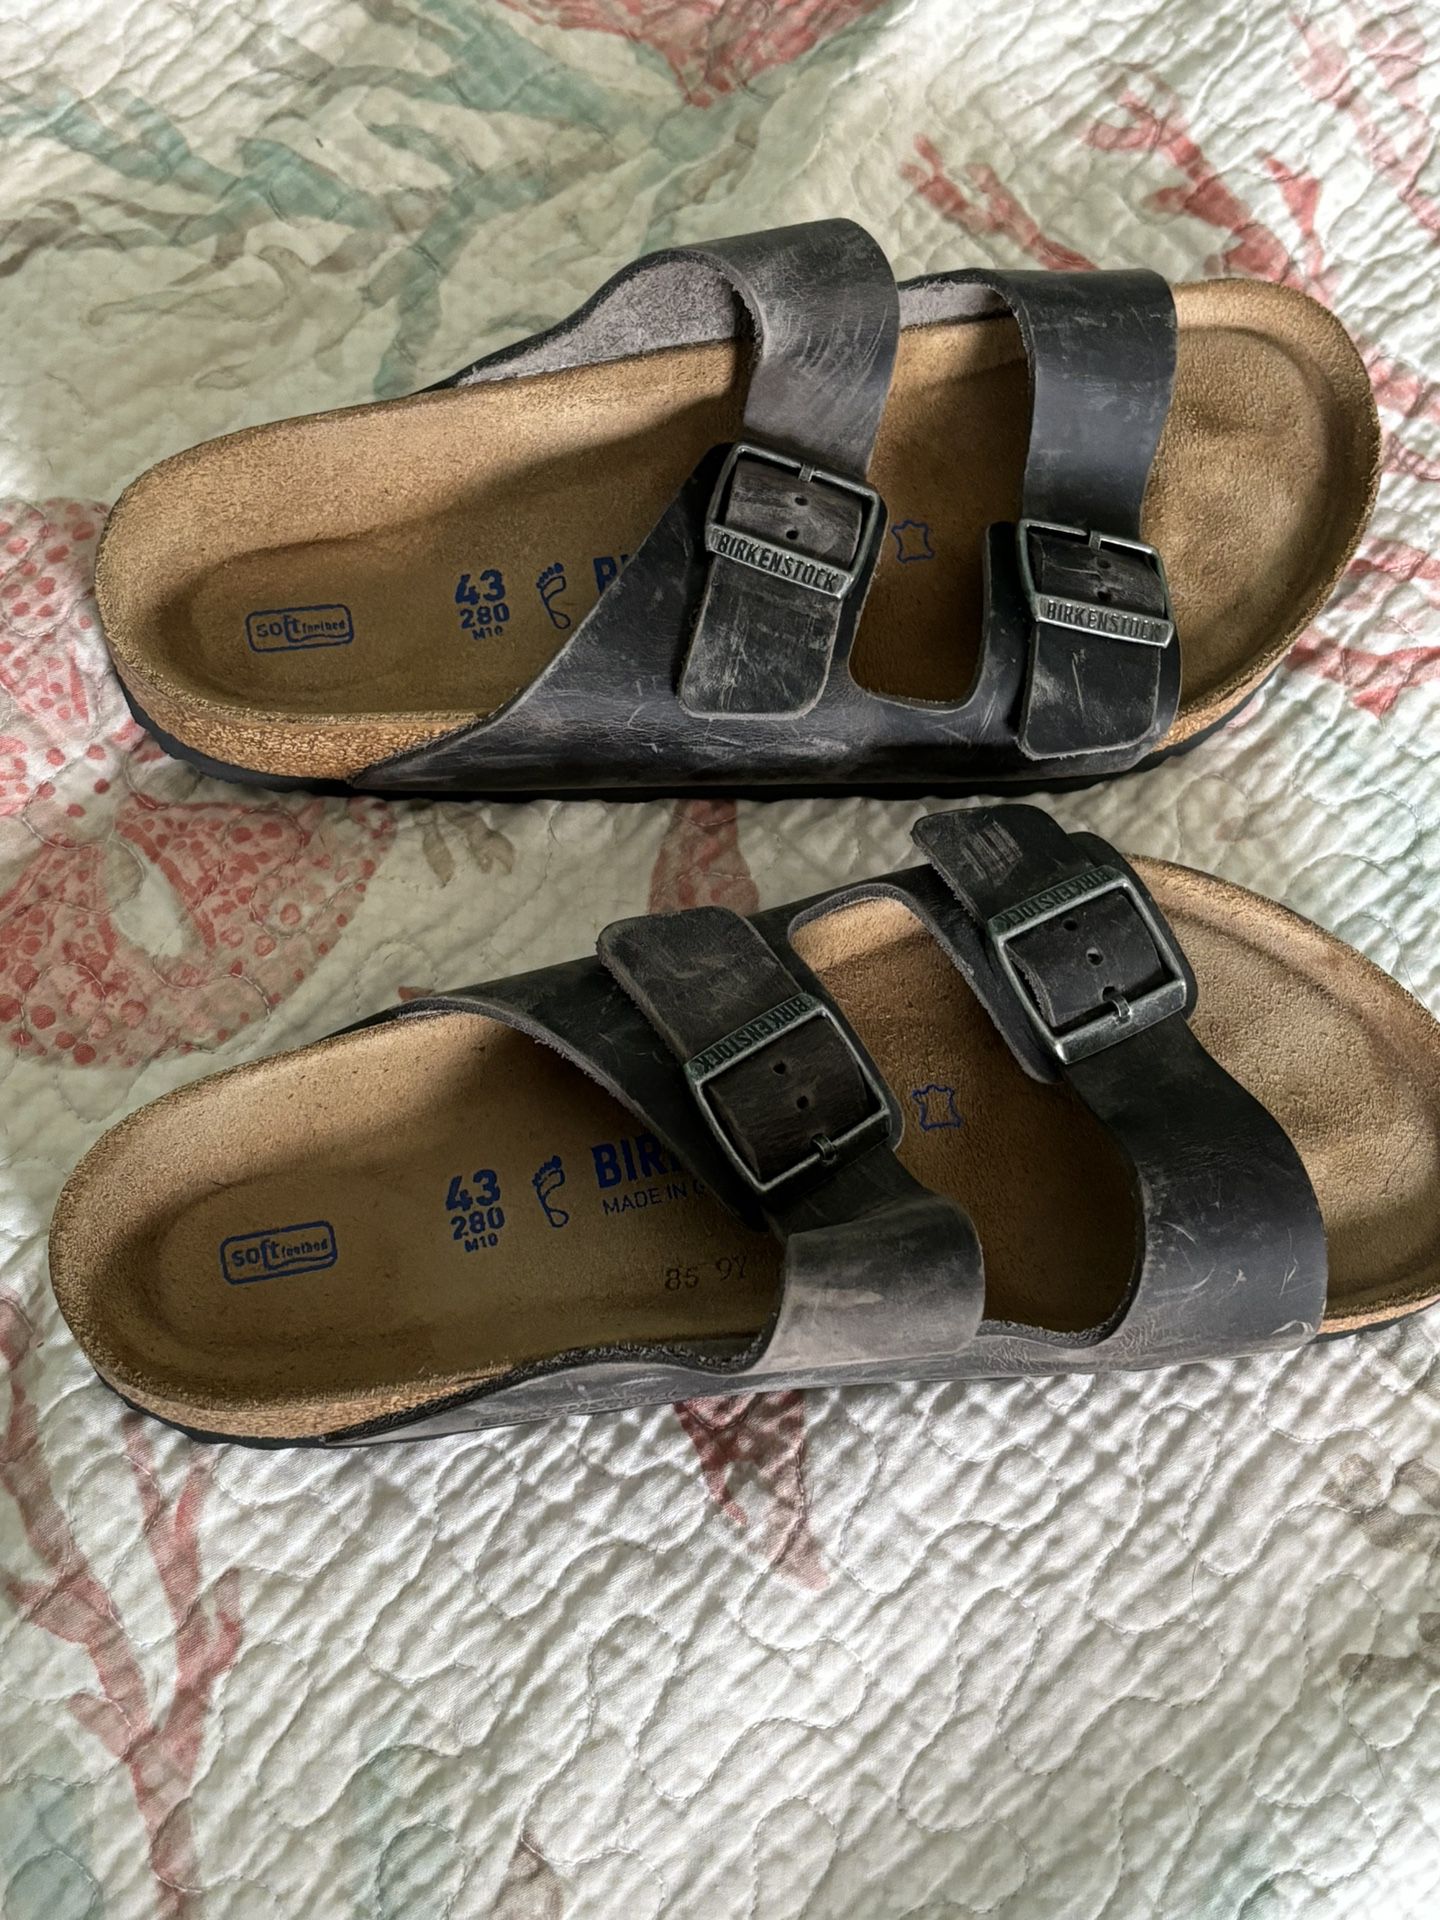 Birkenstock Sandals New